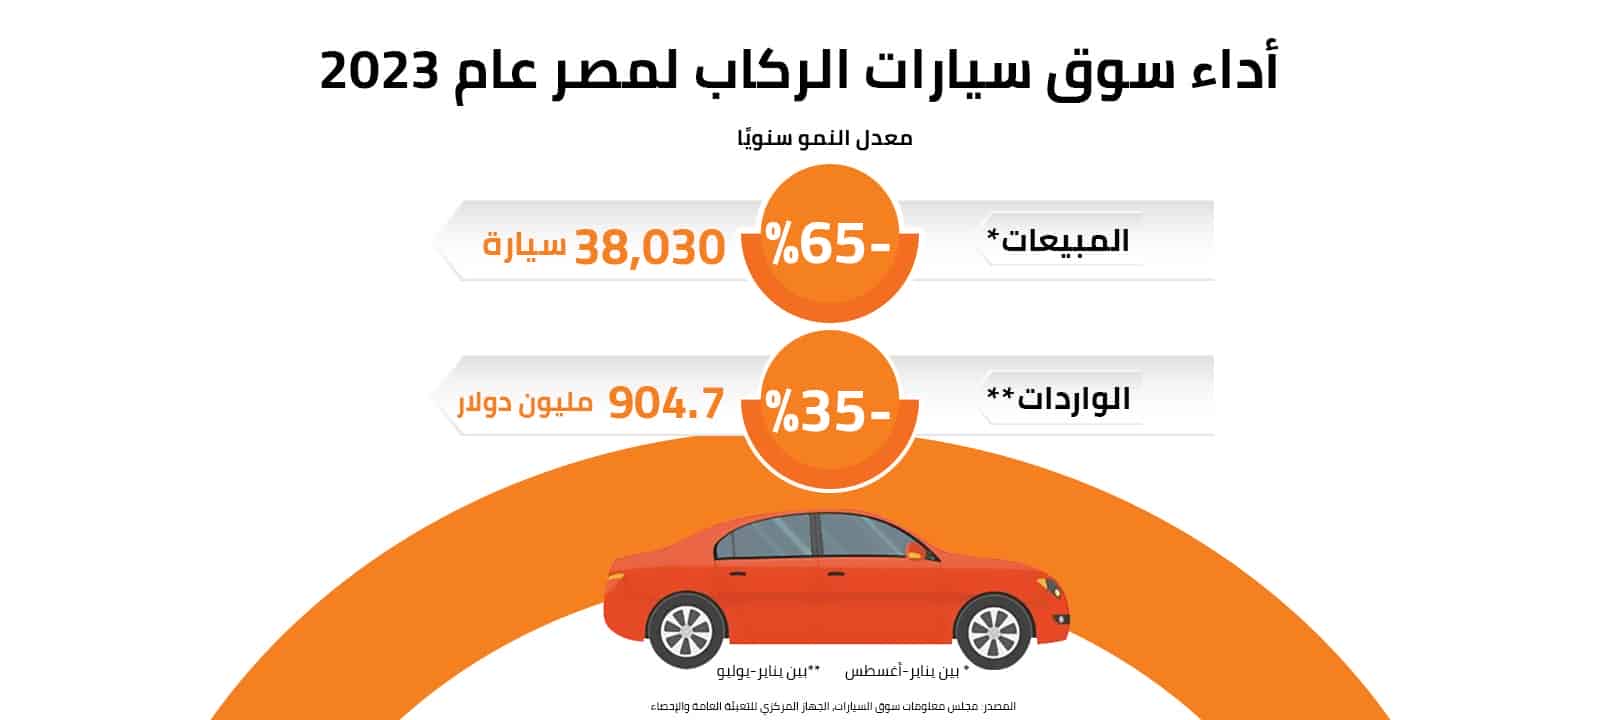 أداء سوق سيارات الركاب لمصر عام 2023